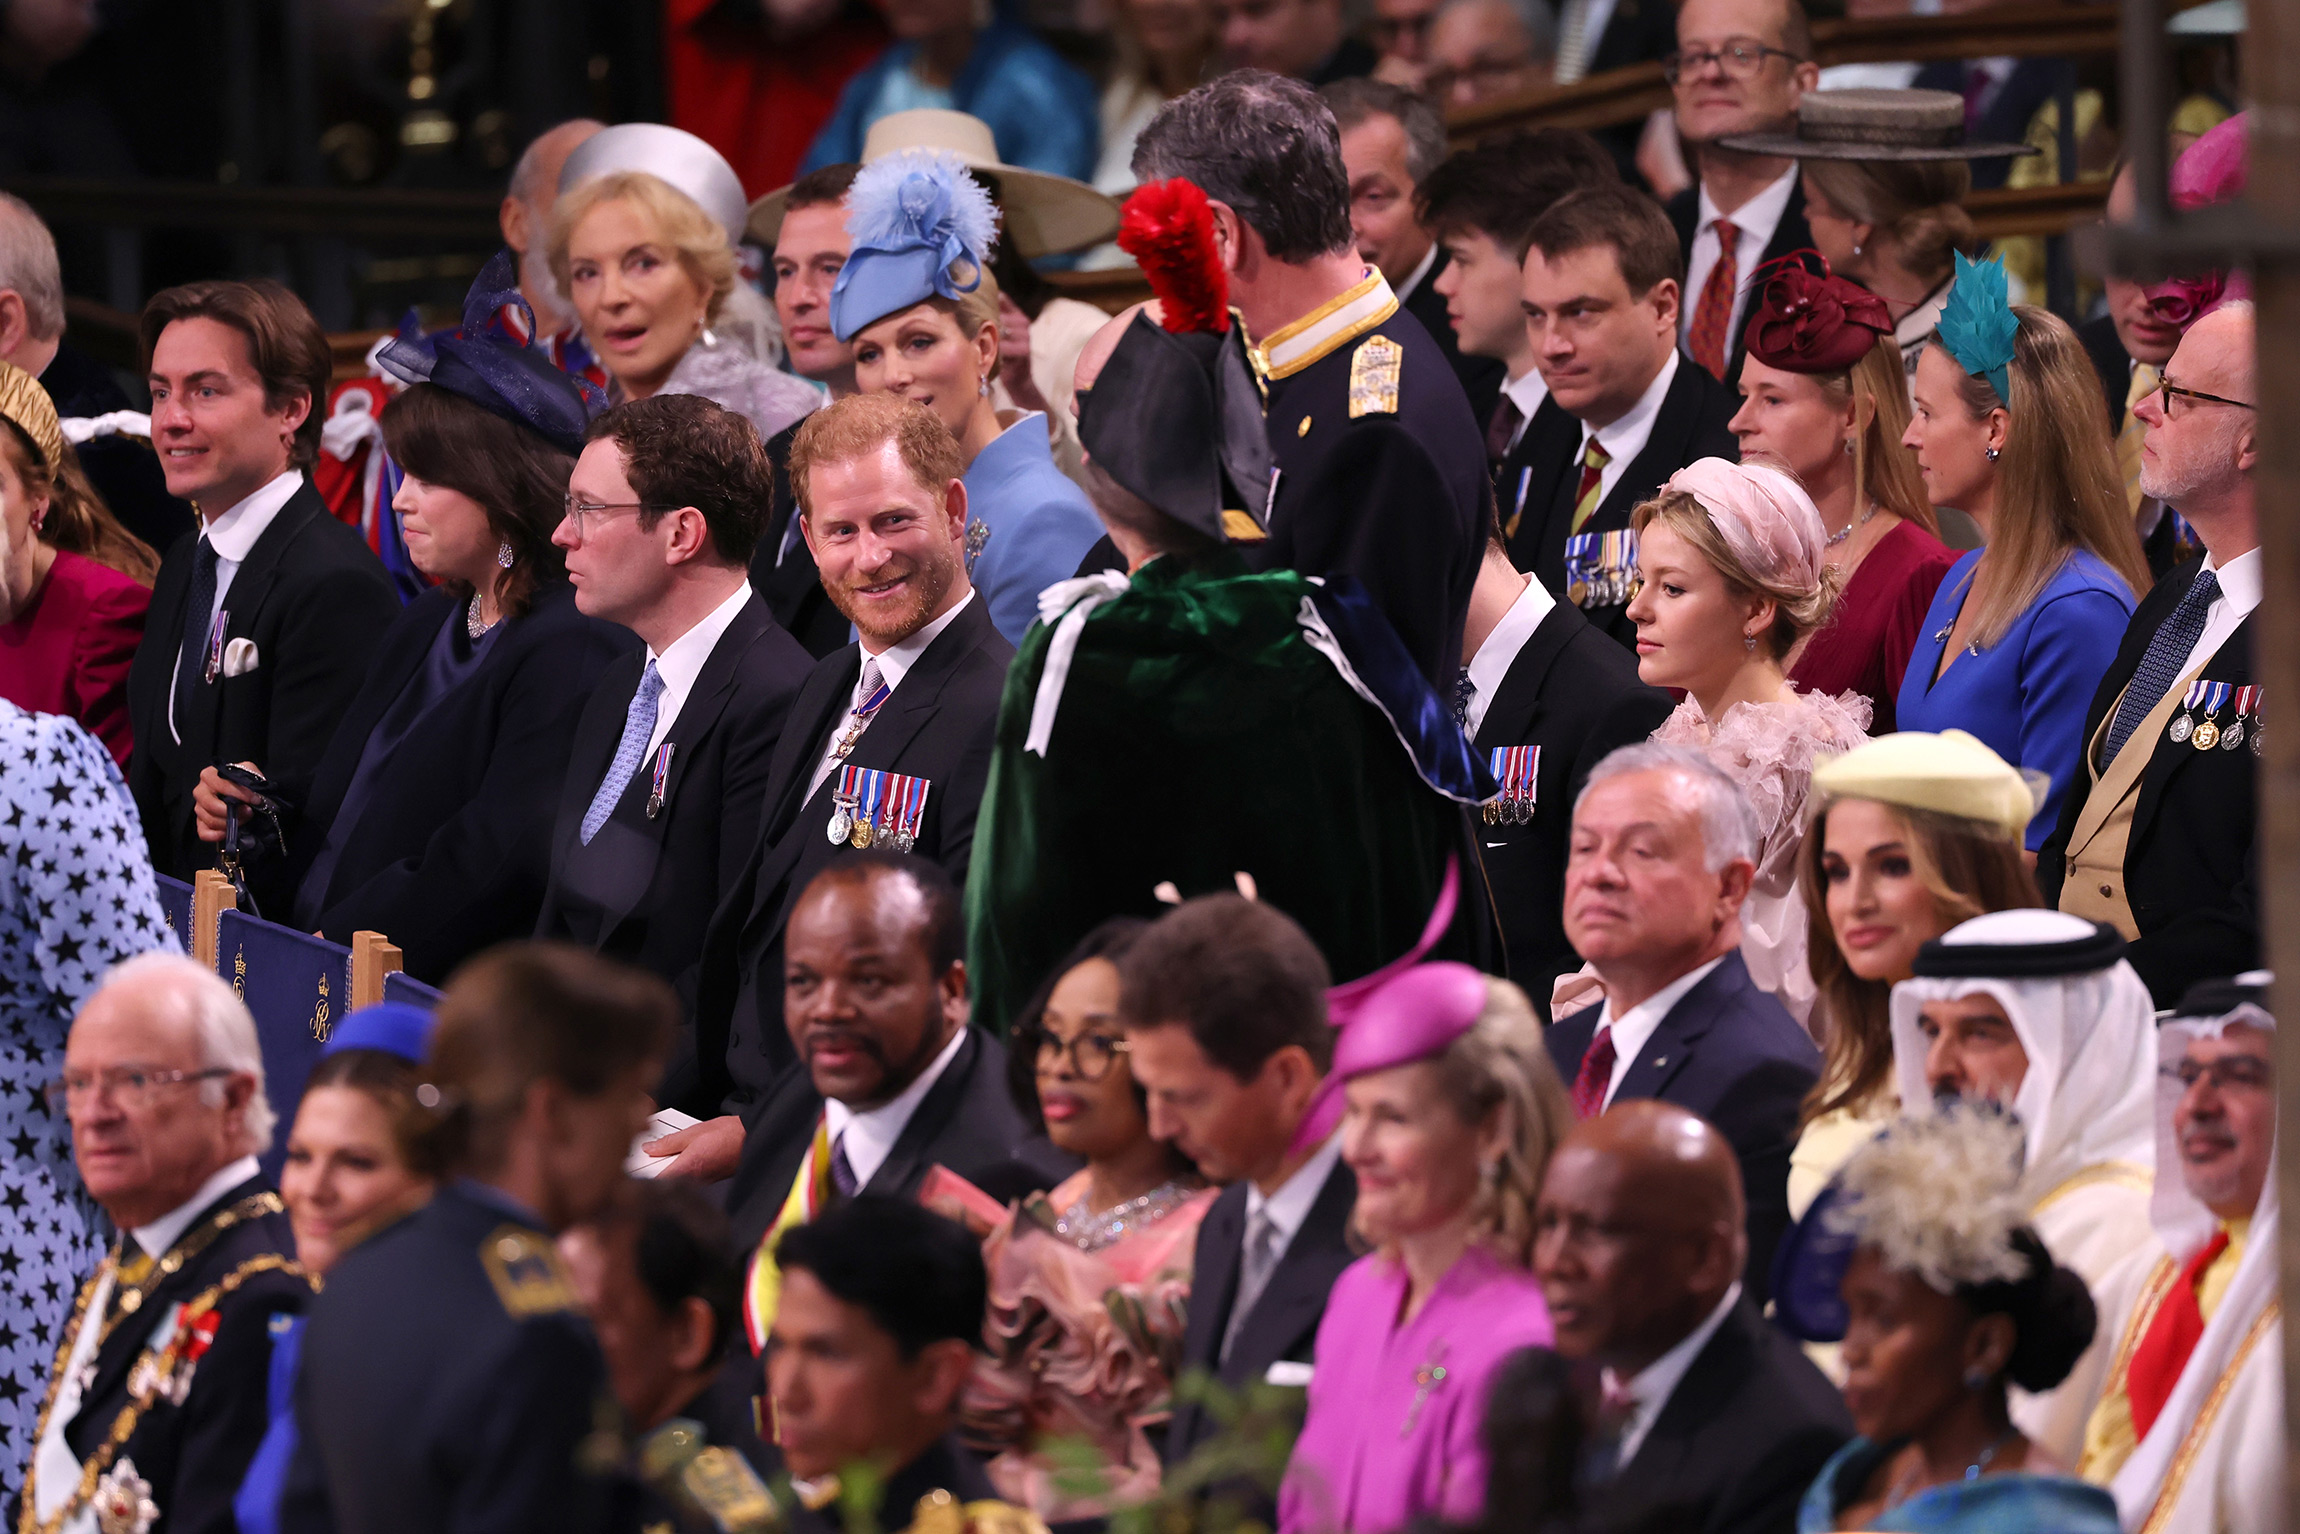 Младший сын короля принц Гарри занял место среди гостей в третьем ряду. Первые ряды на церемонии по традиции отведены членам королевской семьи. Жена принца Гарри Меган Маркл осталась дома с детьми